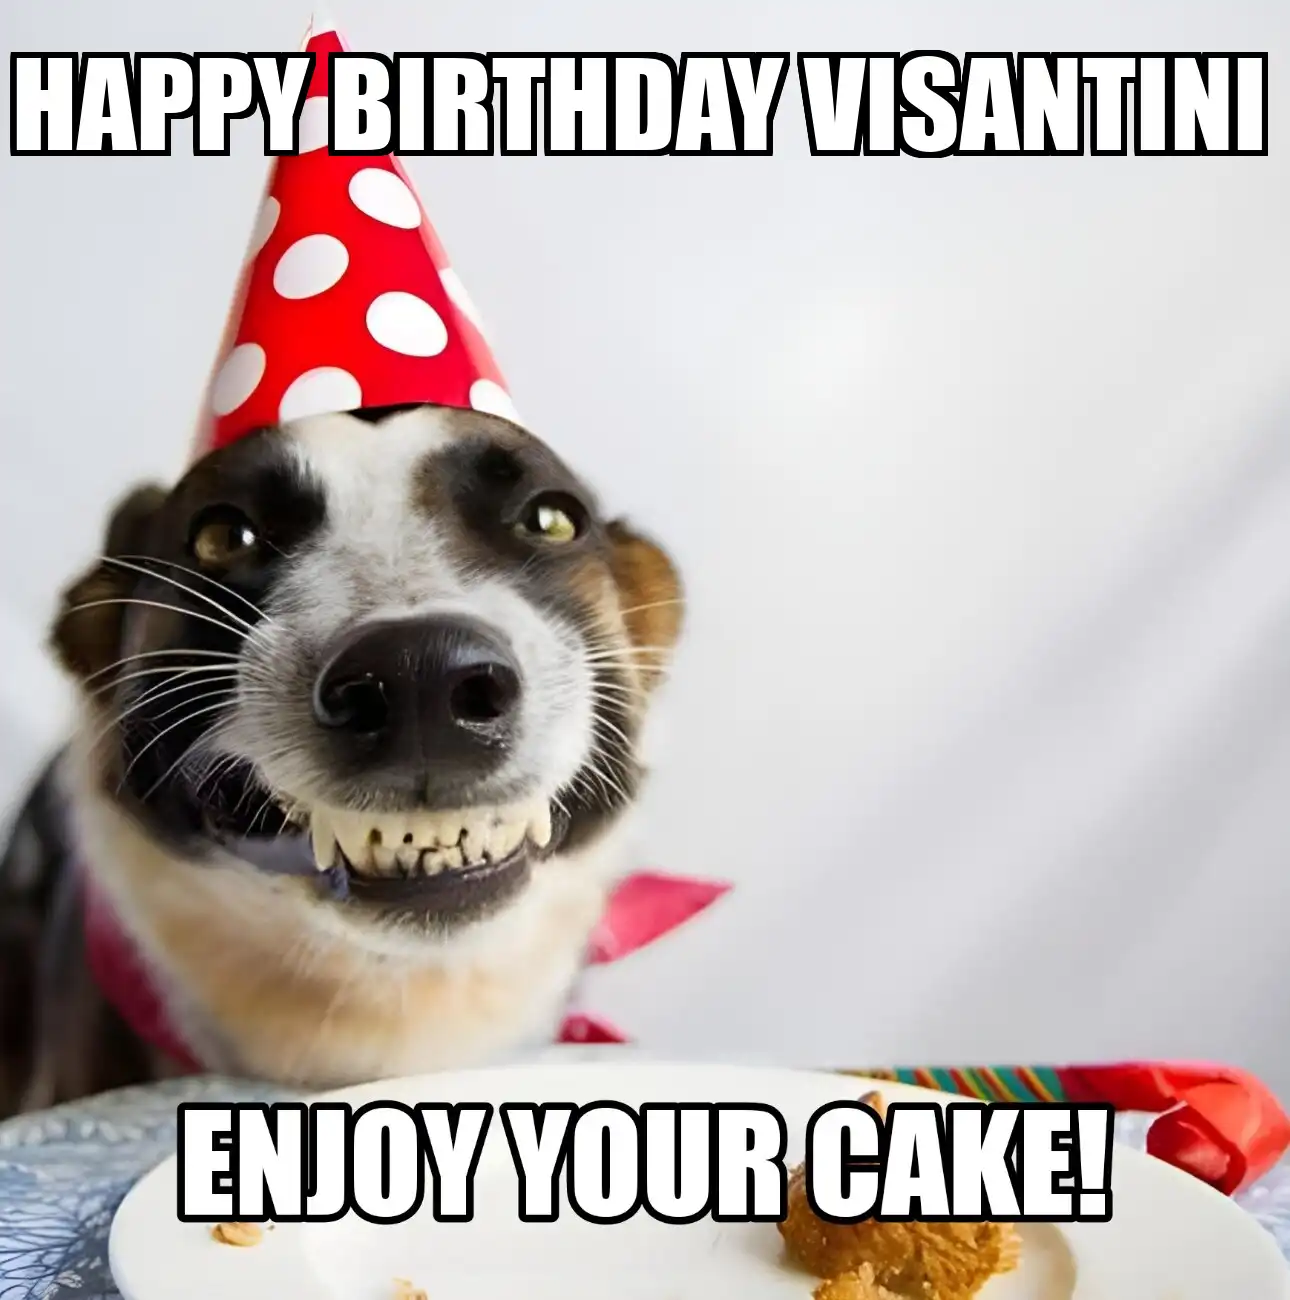 Happy Birthday Visantini Enjoy Your Cake Dog Meme